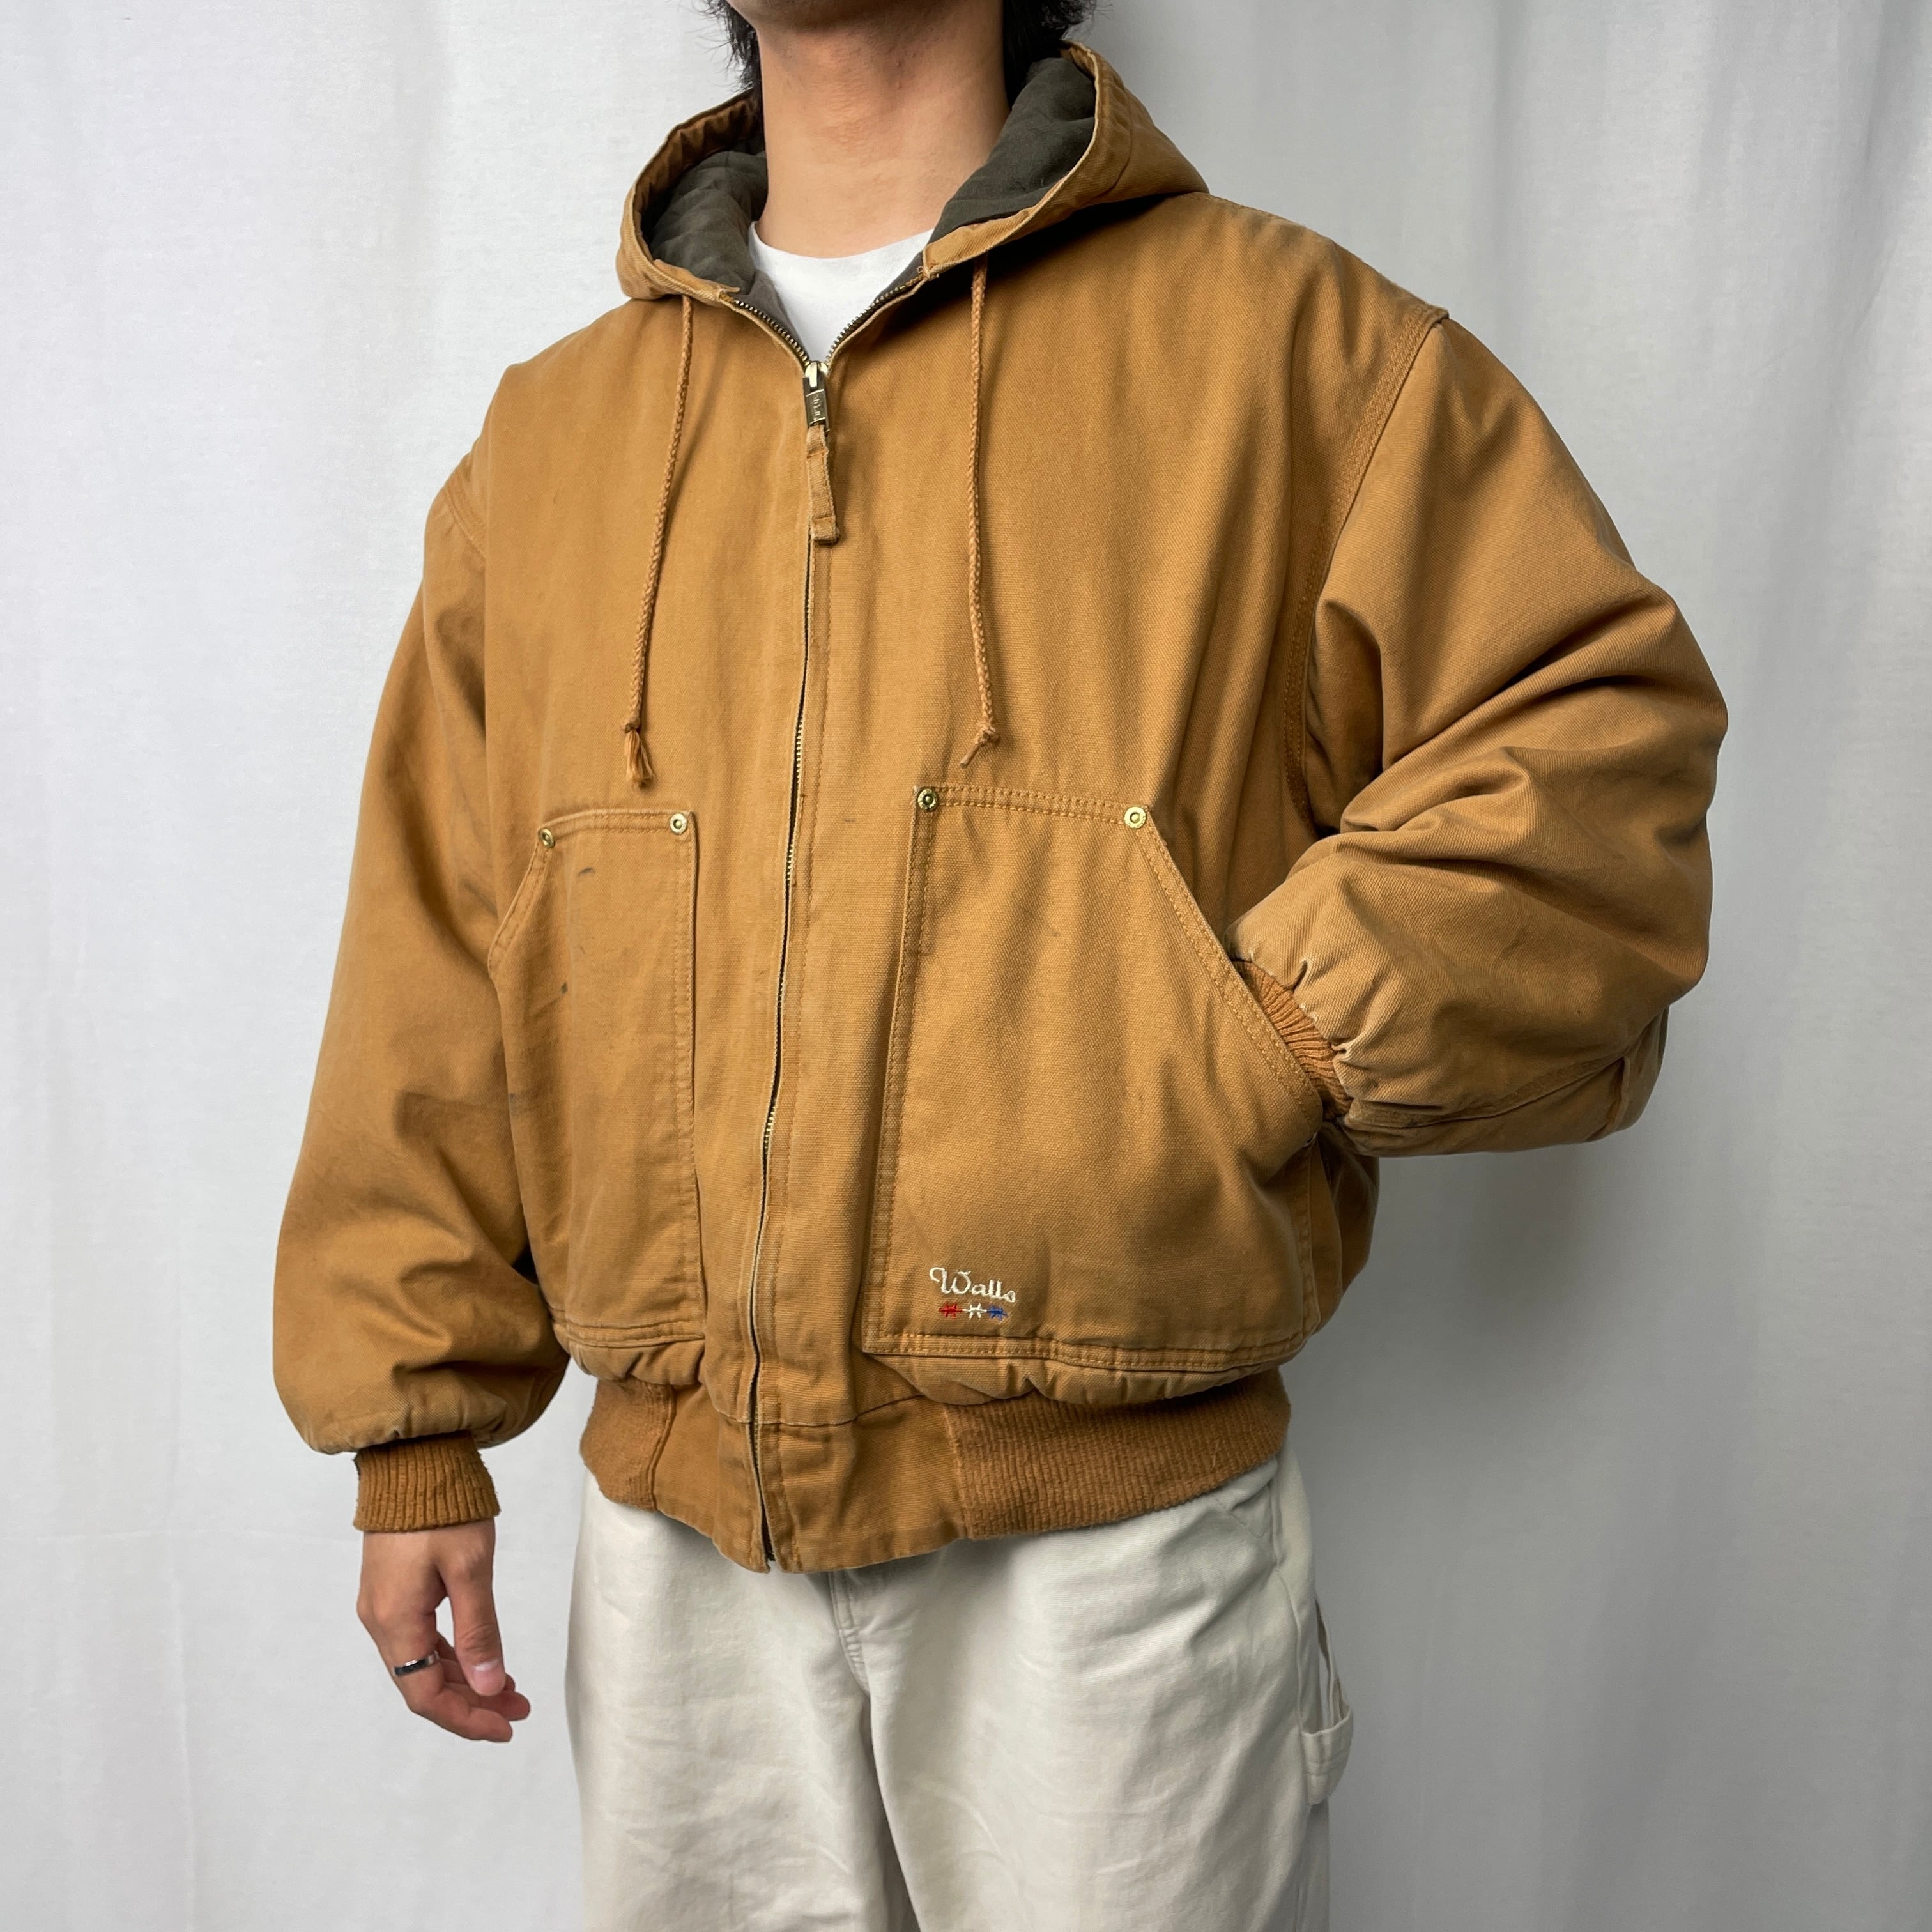 Walls duck jacket ネイビー 2XL オーバーサイズ